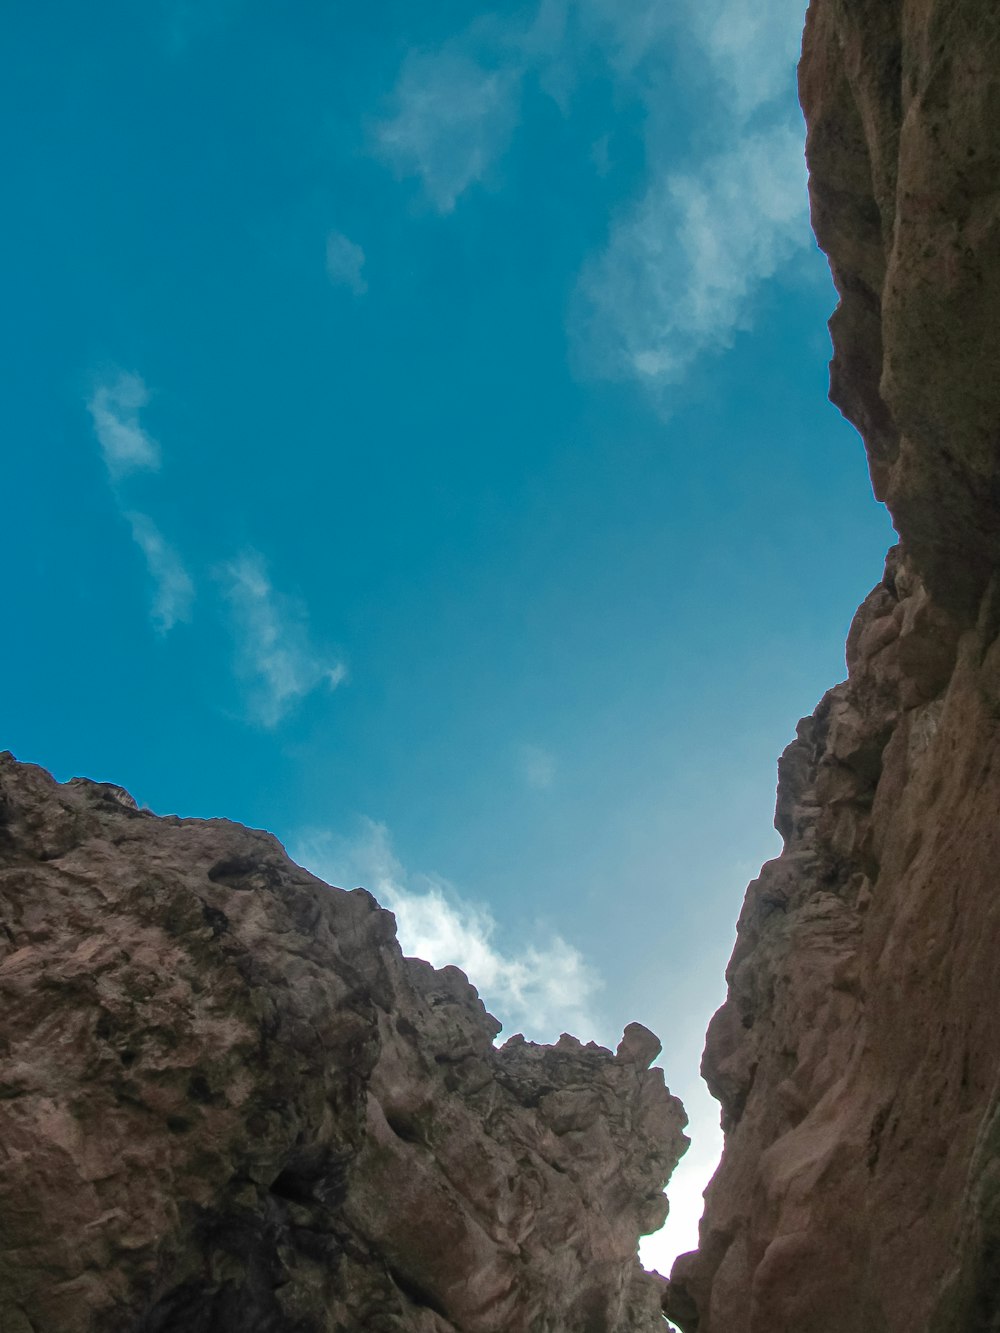 Una persona in piedi sulla cima di una scogliera rocciosa